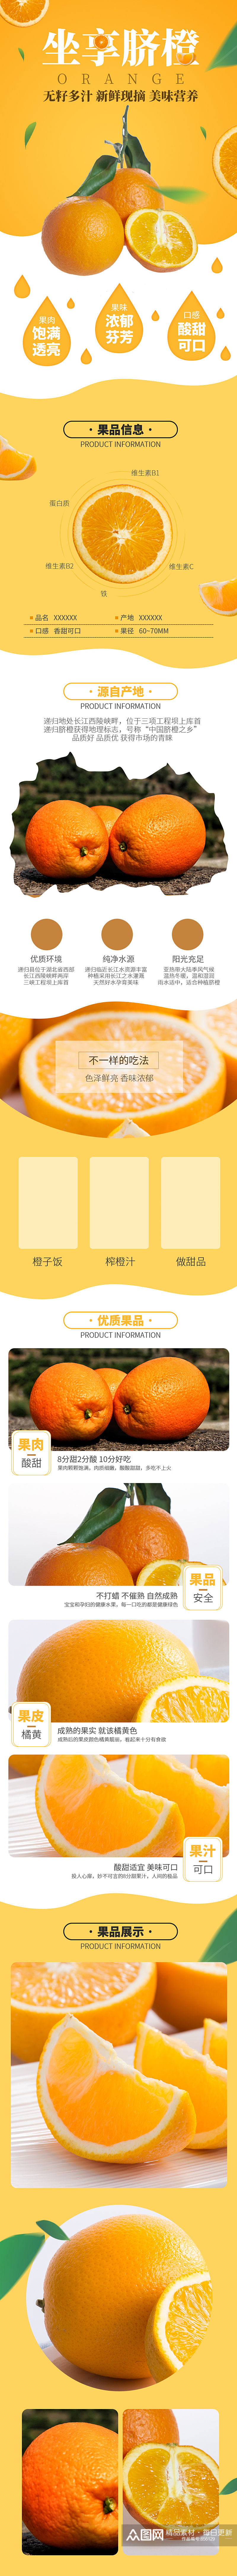 淘宝脐橙详情页模板水果橙子简约橙色描述素材